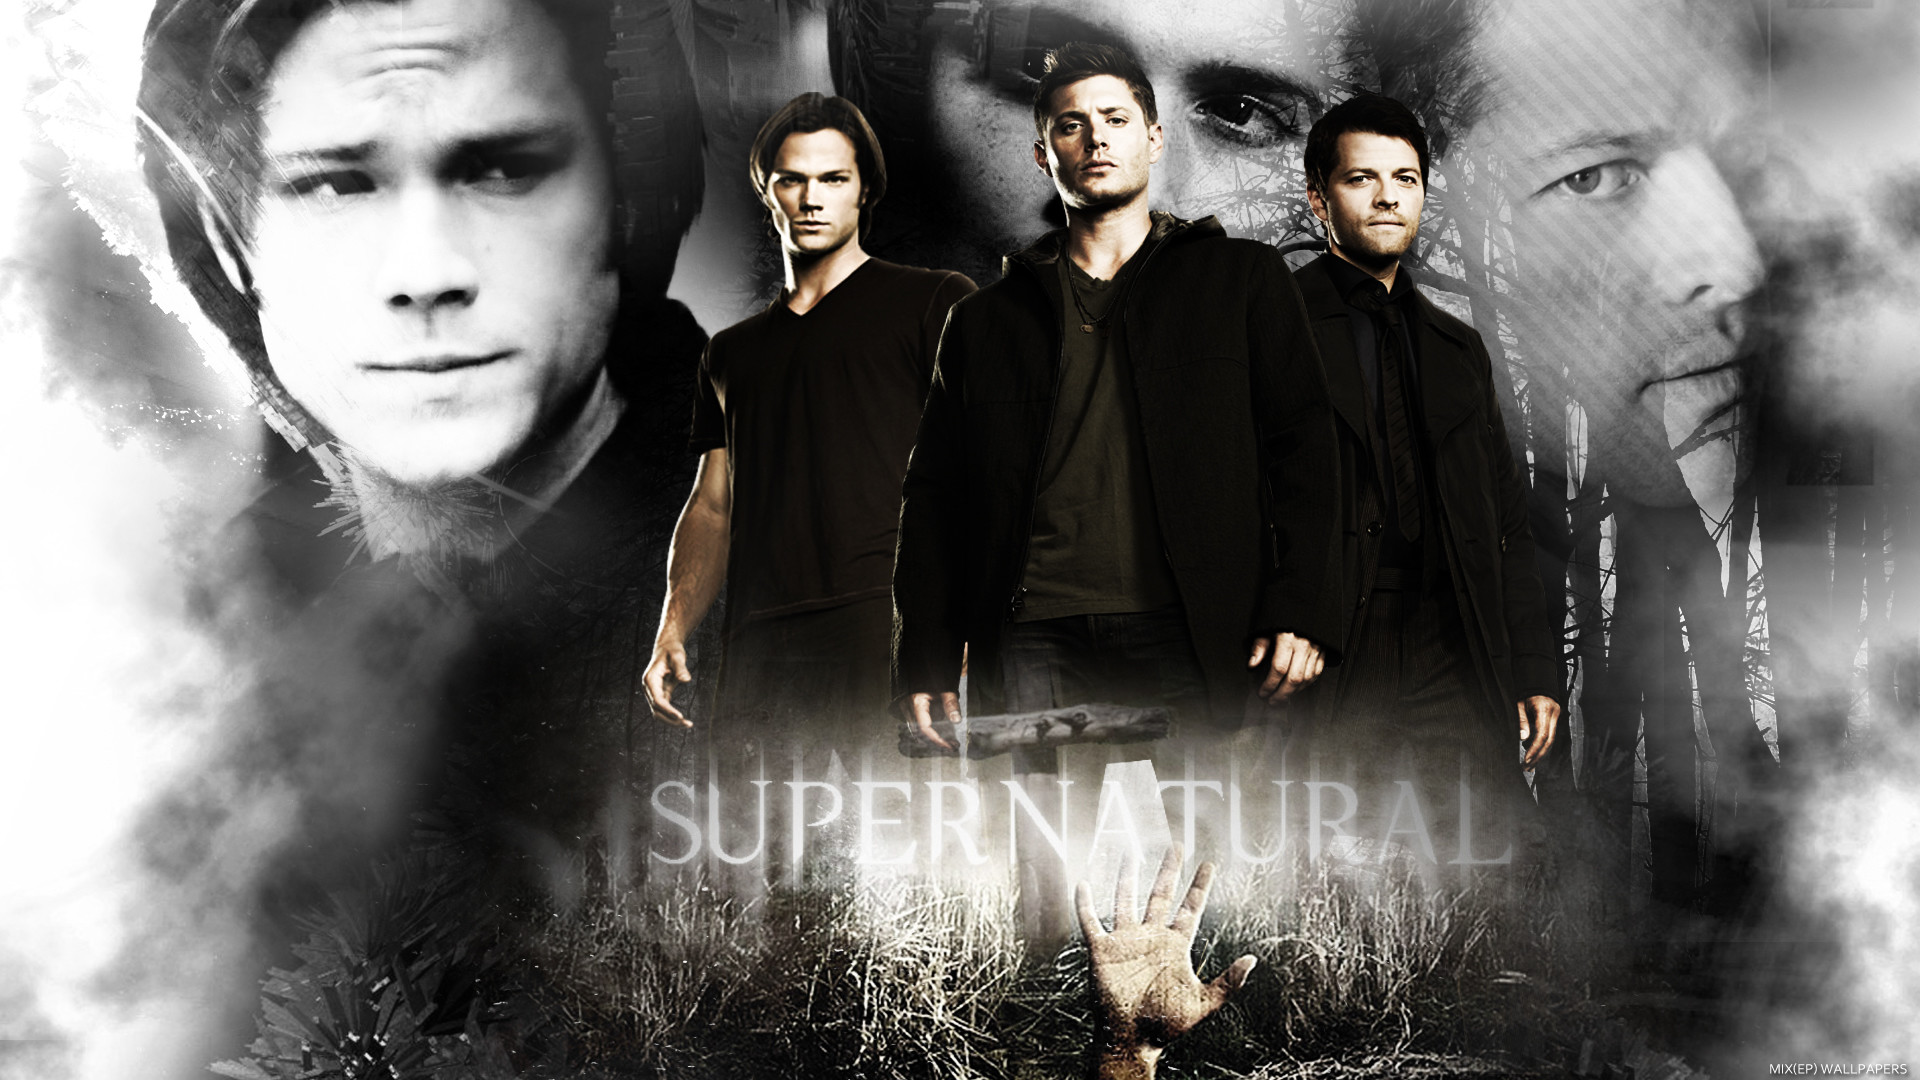 /supernatural/images/33561497/title/supernatural-wallpaper-